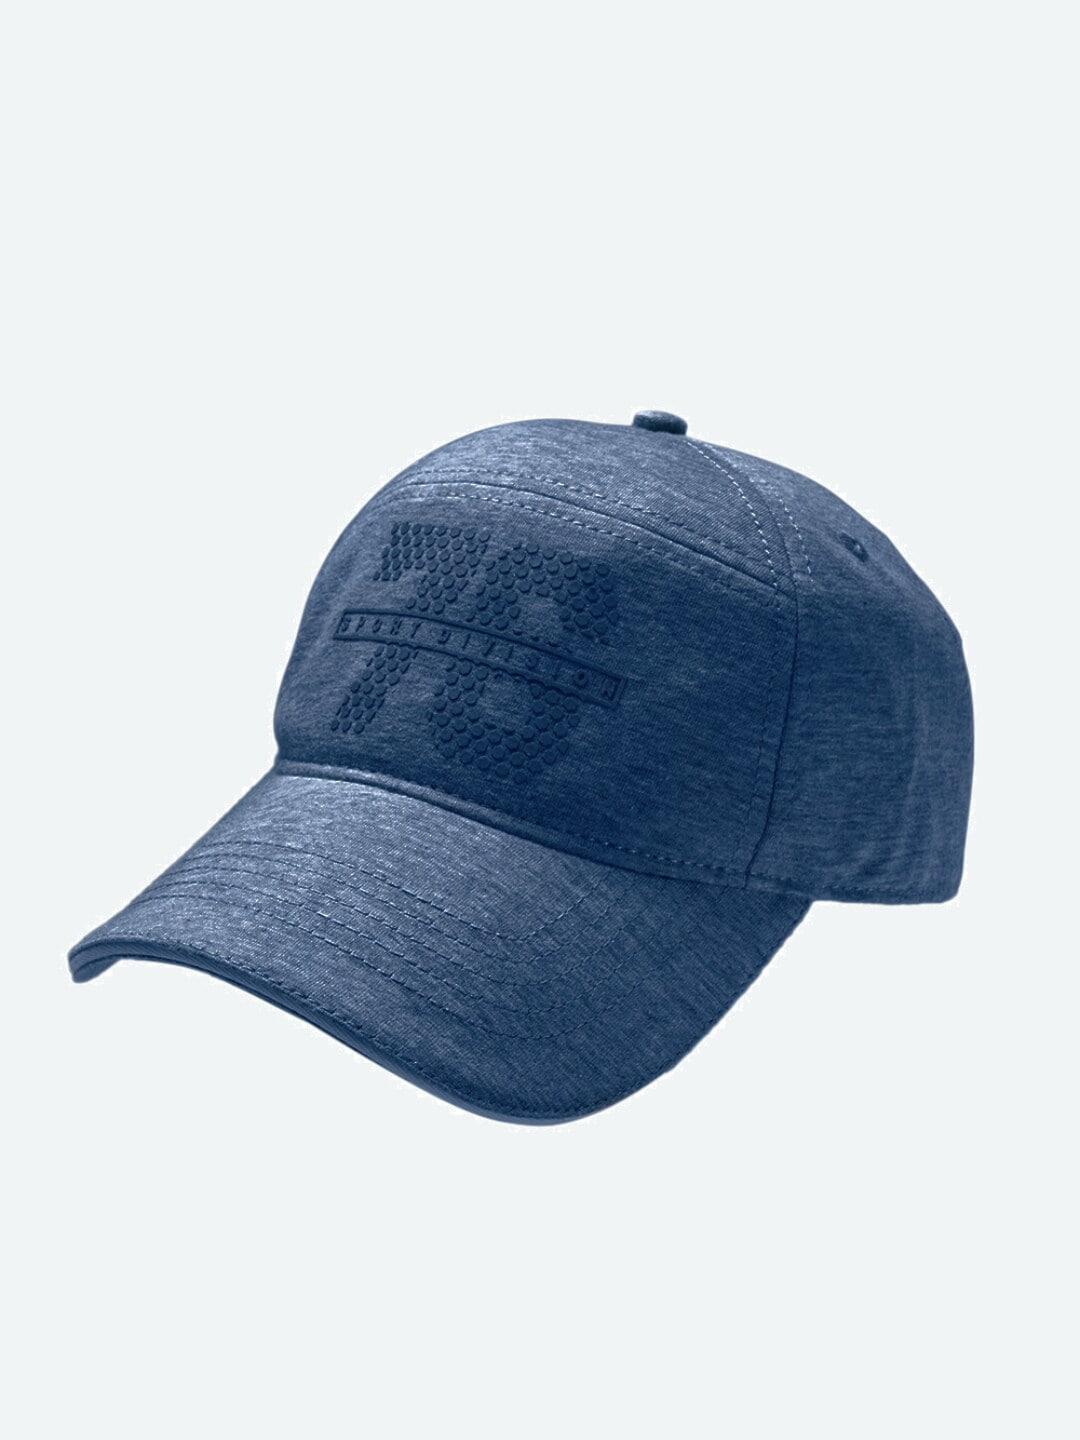 jockey-men-navy-blue-visor-cap